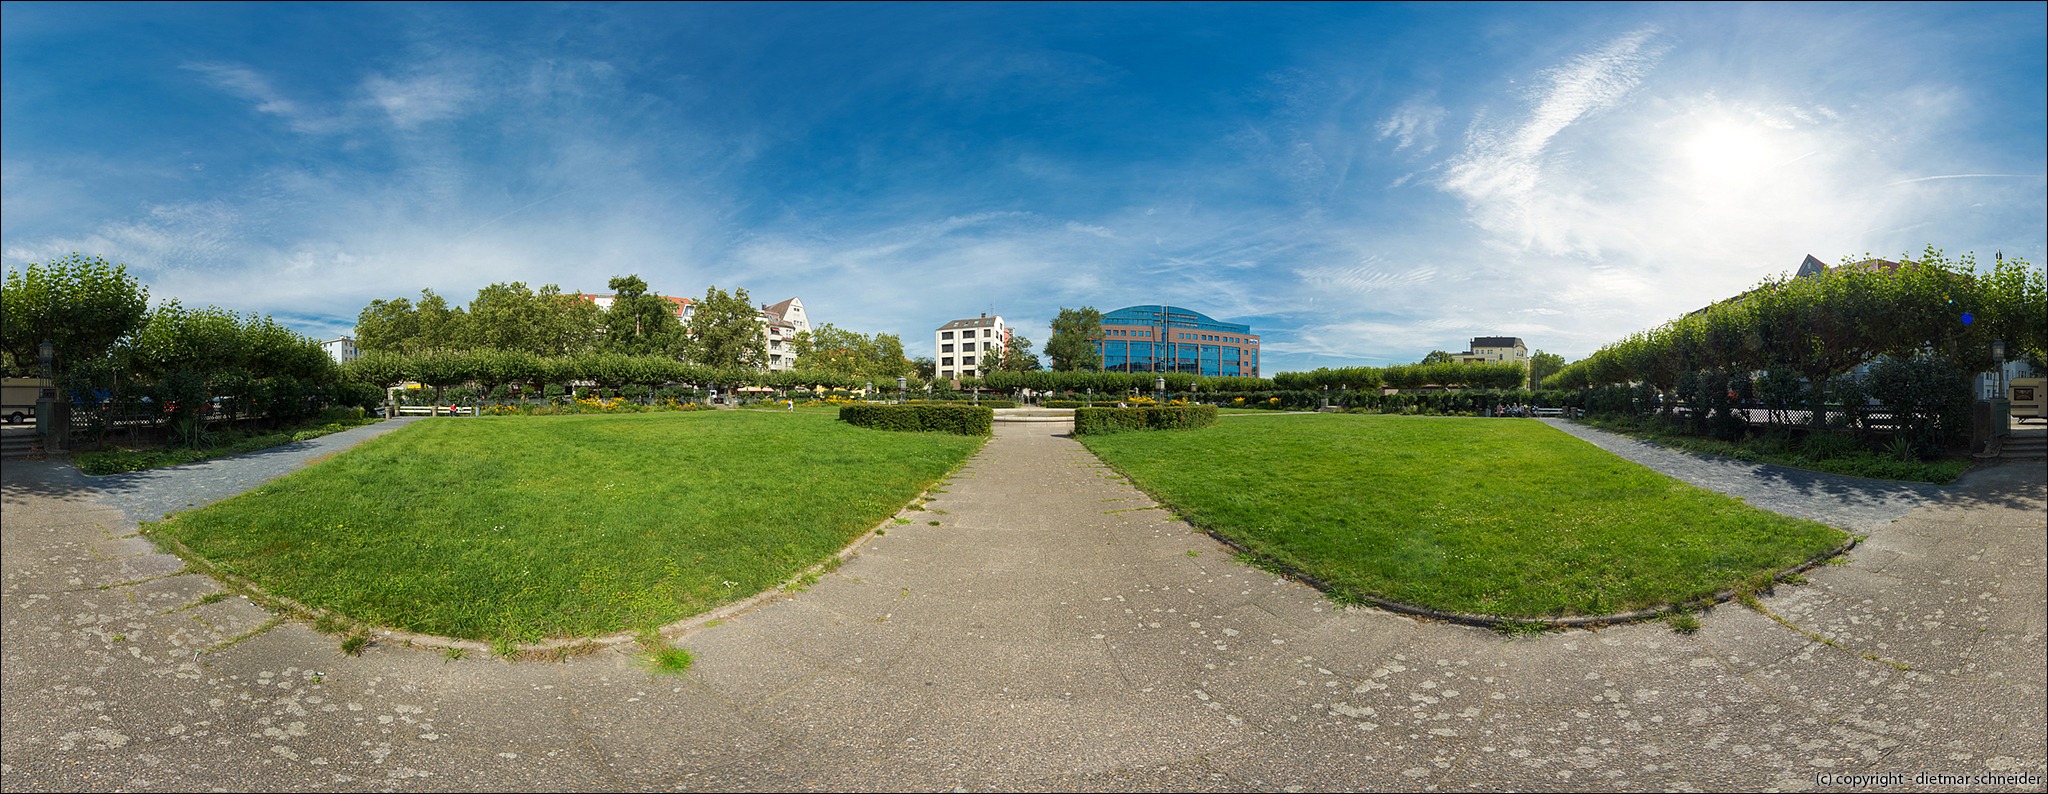 You are currently viewing Mierendorffinsel – Mierendorffplatz – Parkanlage / Grünanlage (08.08.2017)